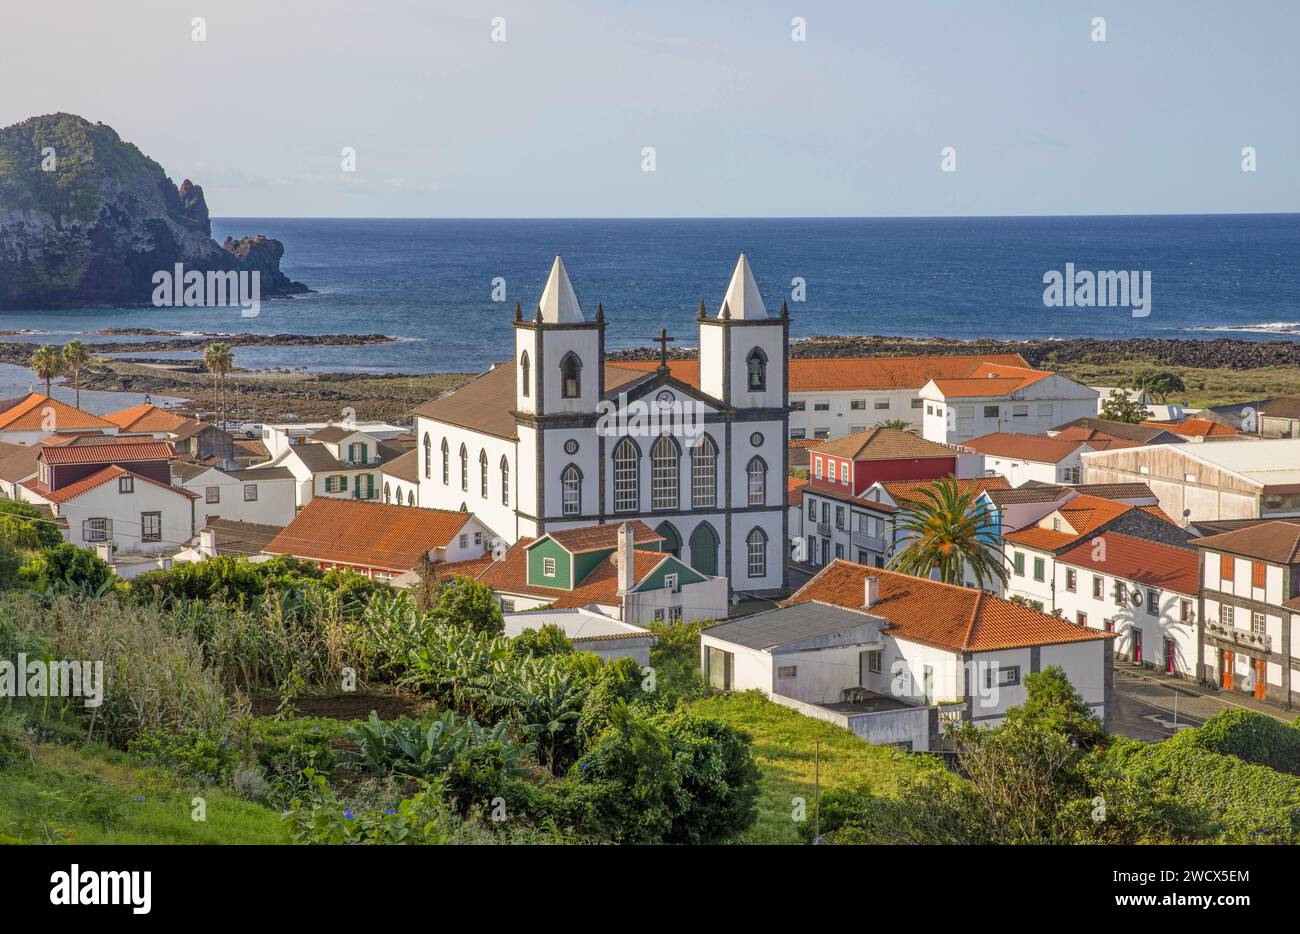 Portogallo, arcipelago delle Azzorre, isola di Pico, Lajes de Pico, vista dall'alto di questo villaggio con architettura coloniale di fronte all'oceano e alla chiesa della Santissima Trindade Foto Stock